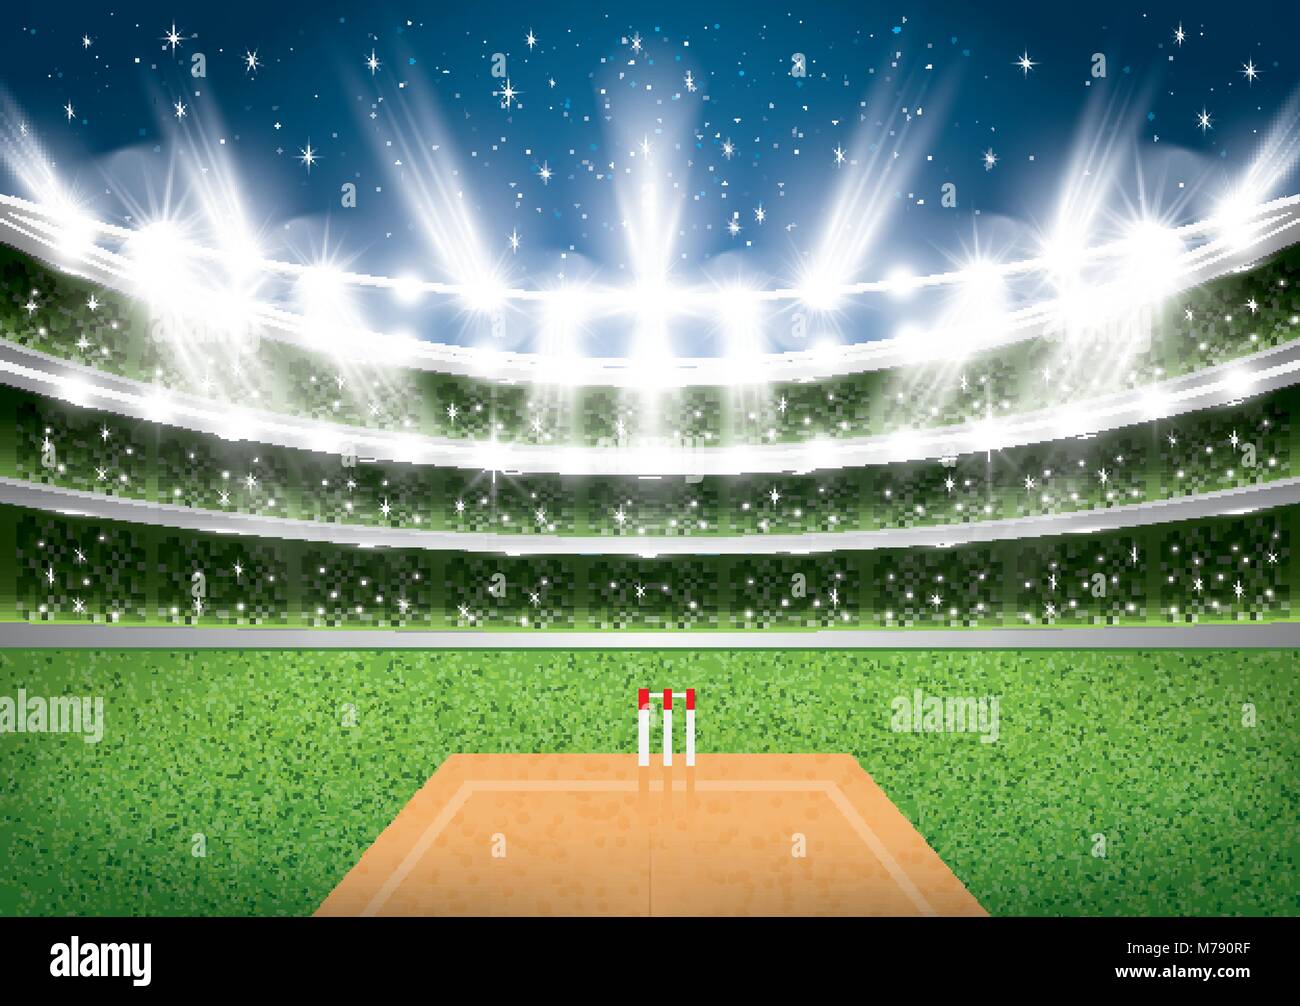 Cricket Stadium with Spotlights. Vector Illustration. Stock Vector